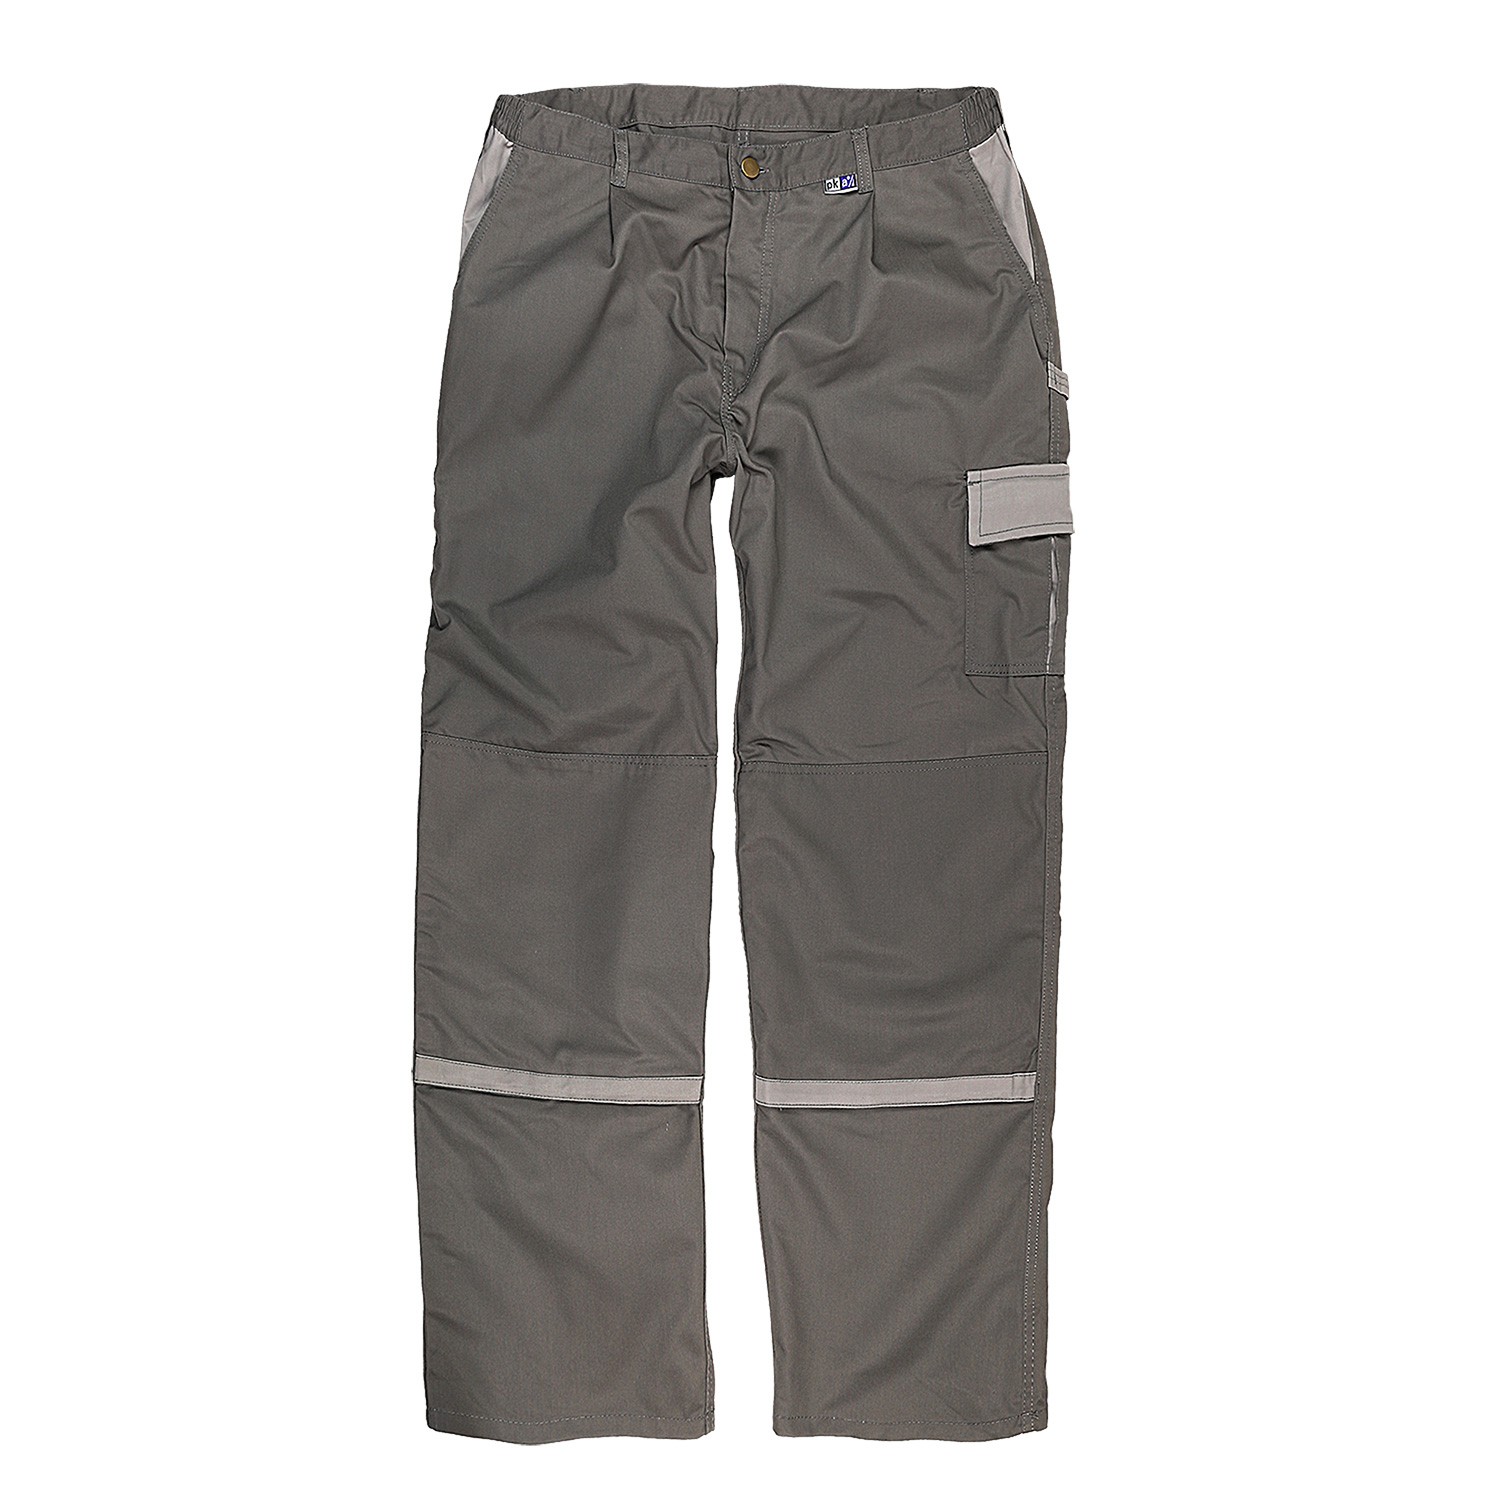 Pantalon "Praktika" de pka KLÖCKER grandes tailles jusqu'à 74 / gris